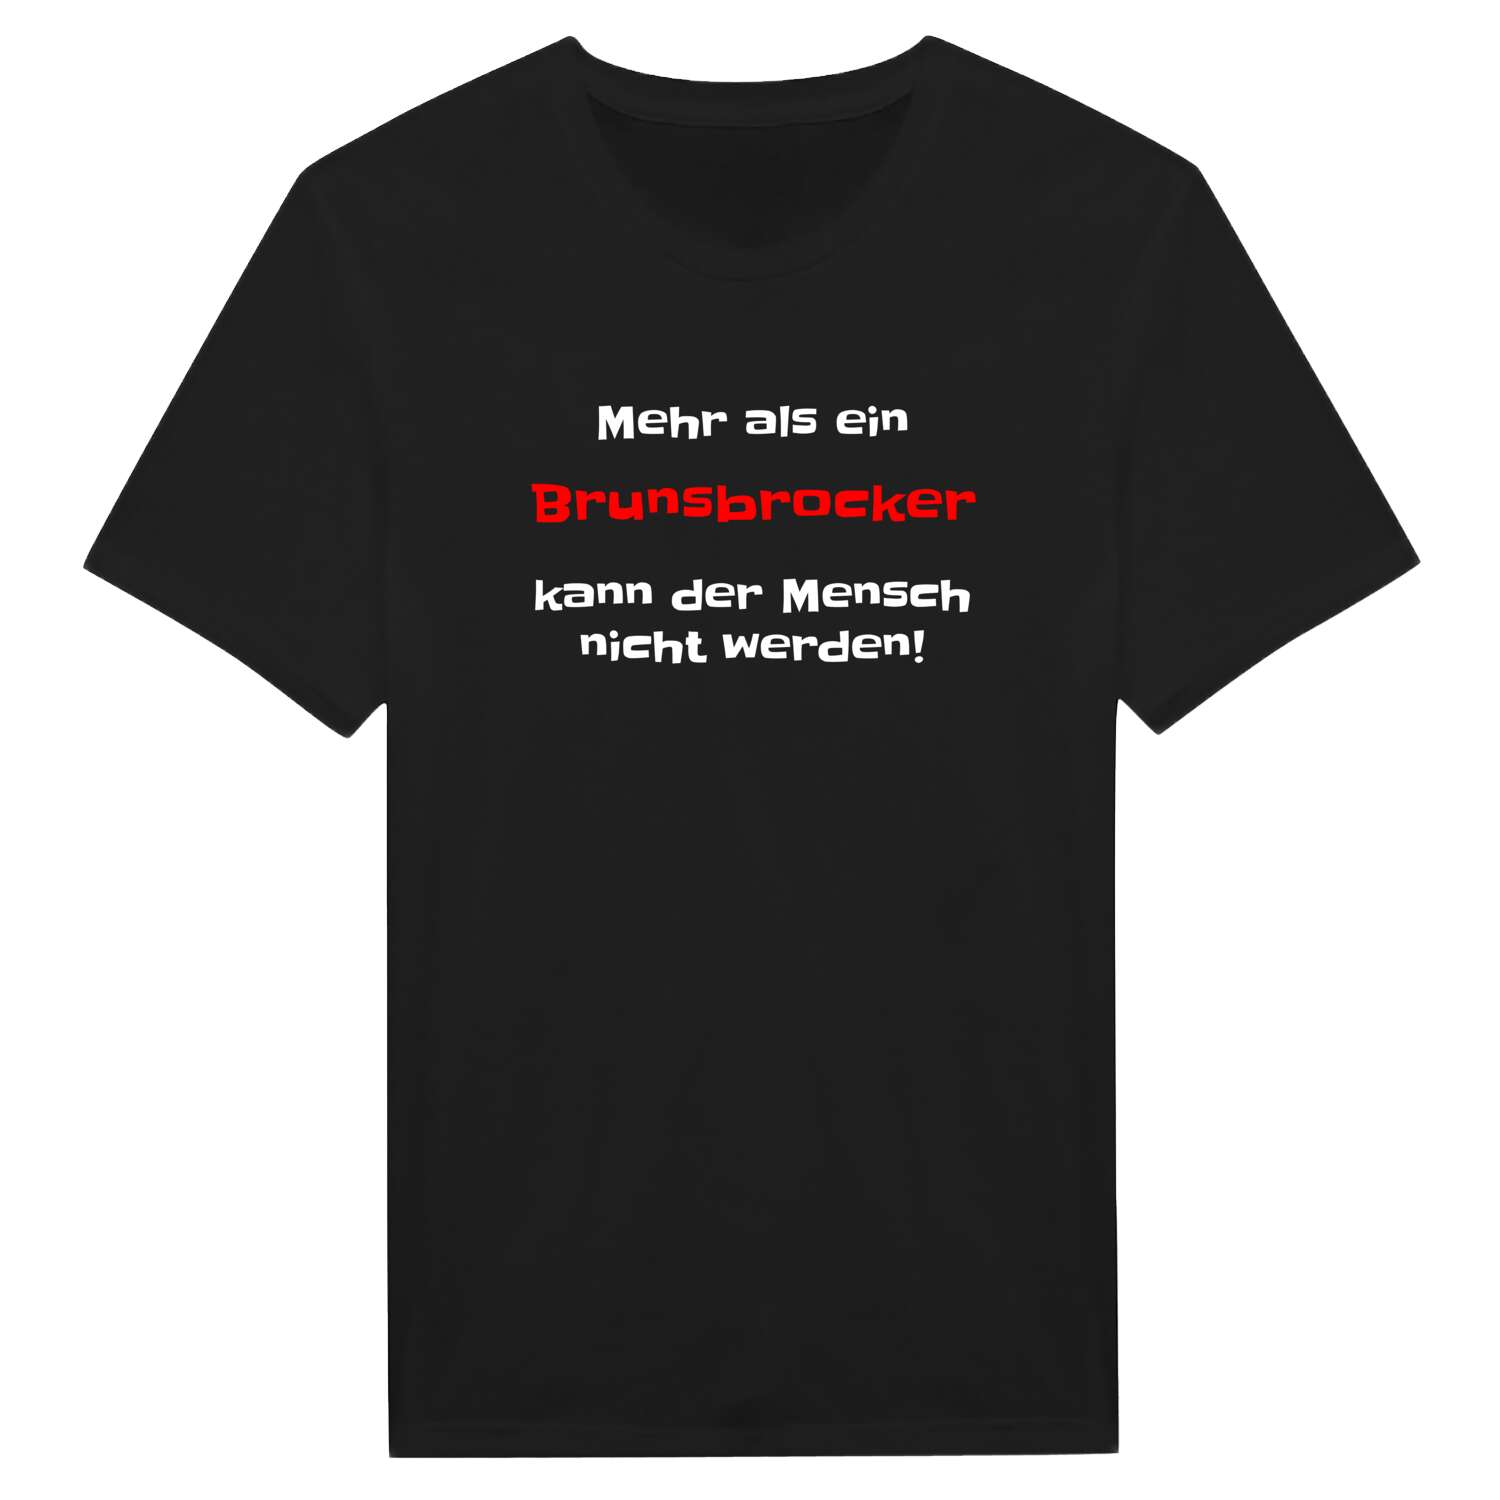 Brunsbrock T-Shirt »Mehr als ein«